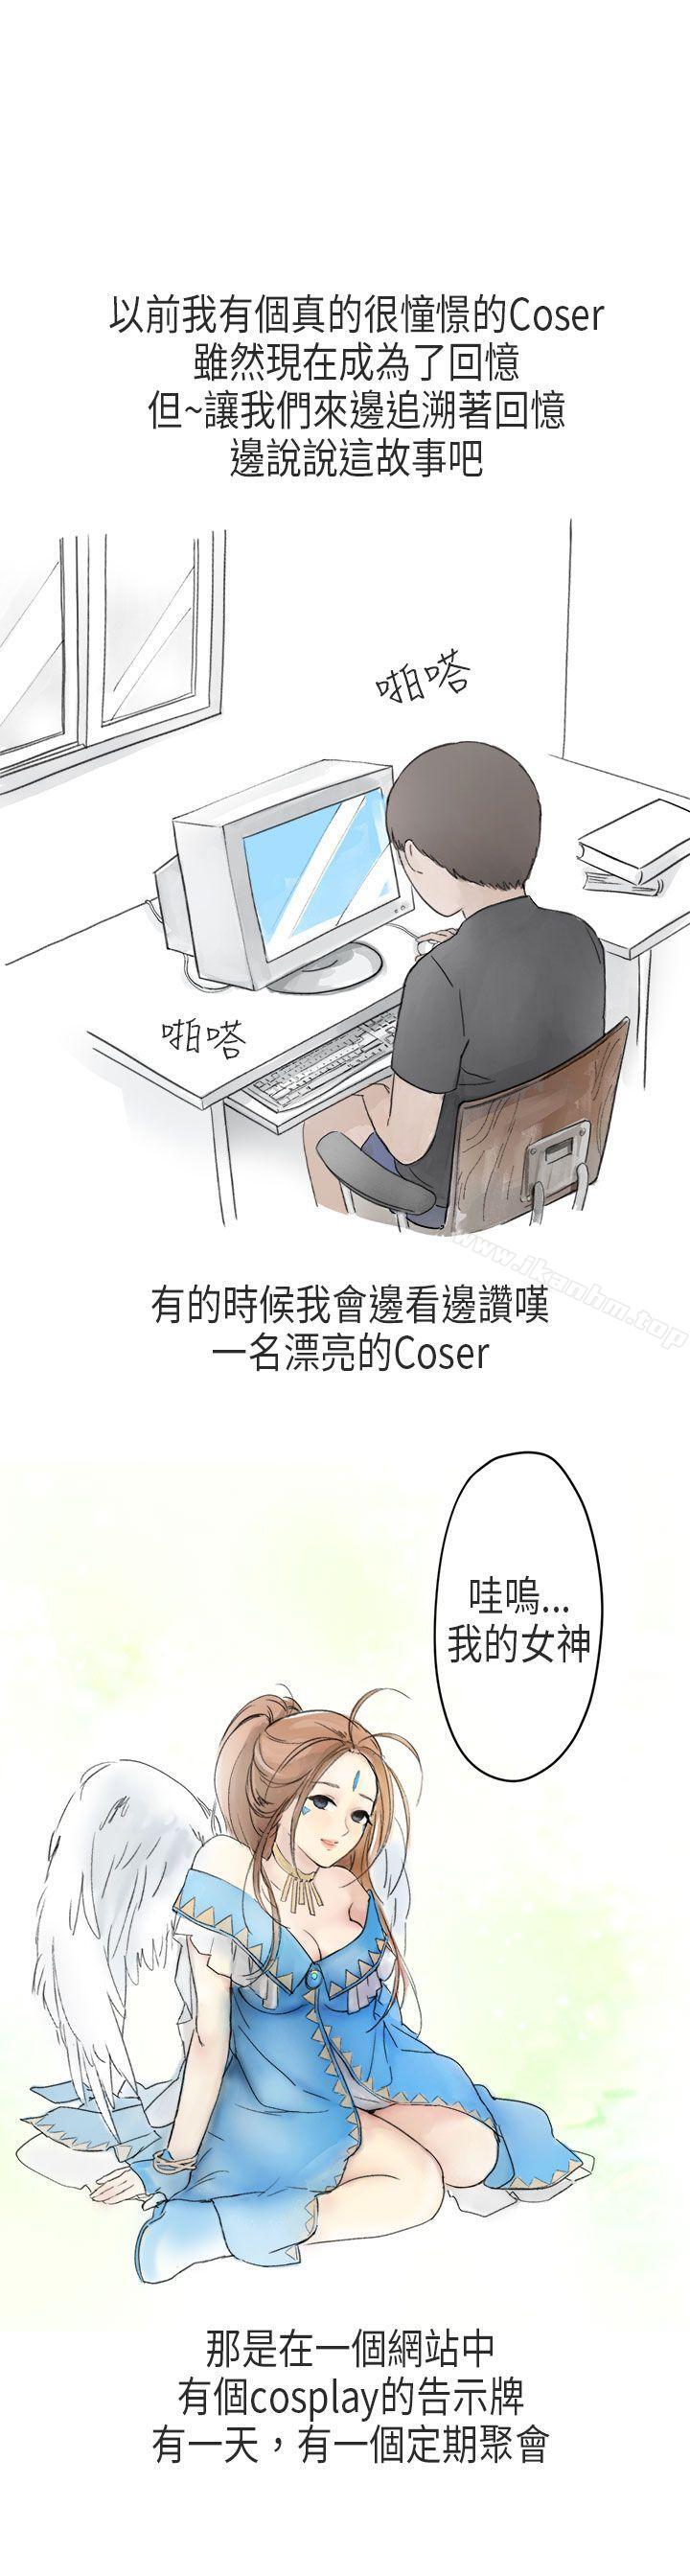 漫画韩国 秘密Story第二季   - 立即阅读 第二季 在Cosplay同好會中(上)第1漫画图片